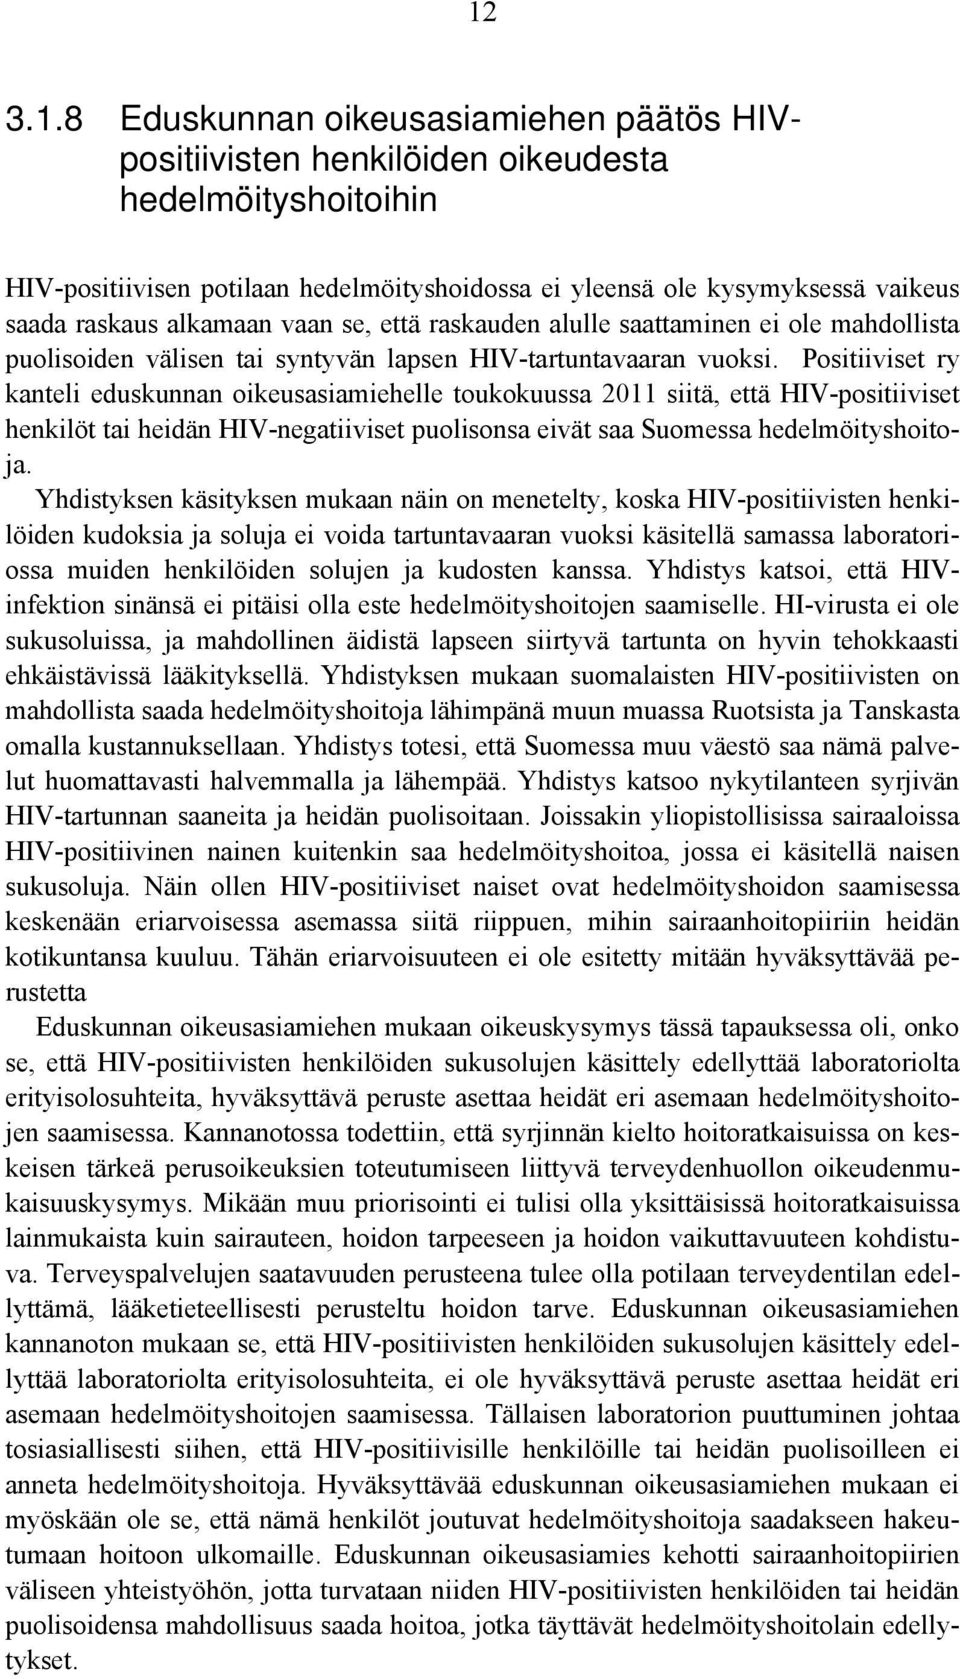 Positiiviset ry kanteli eduskunnan oikeusasiamiehelle toukokuussa 2011 siitä, että HIV-positiiviset henkilöt tai heidän HIV-negatiiviset puolisonsa eivät saa Suomessa hedelmöityshoitoja.